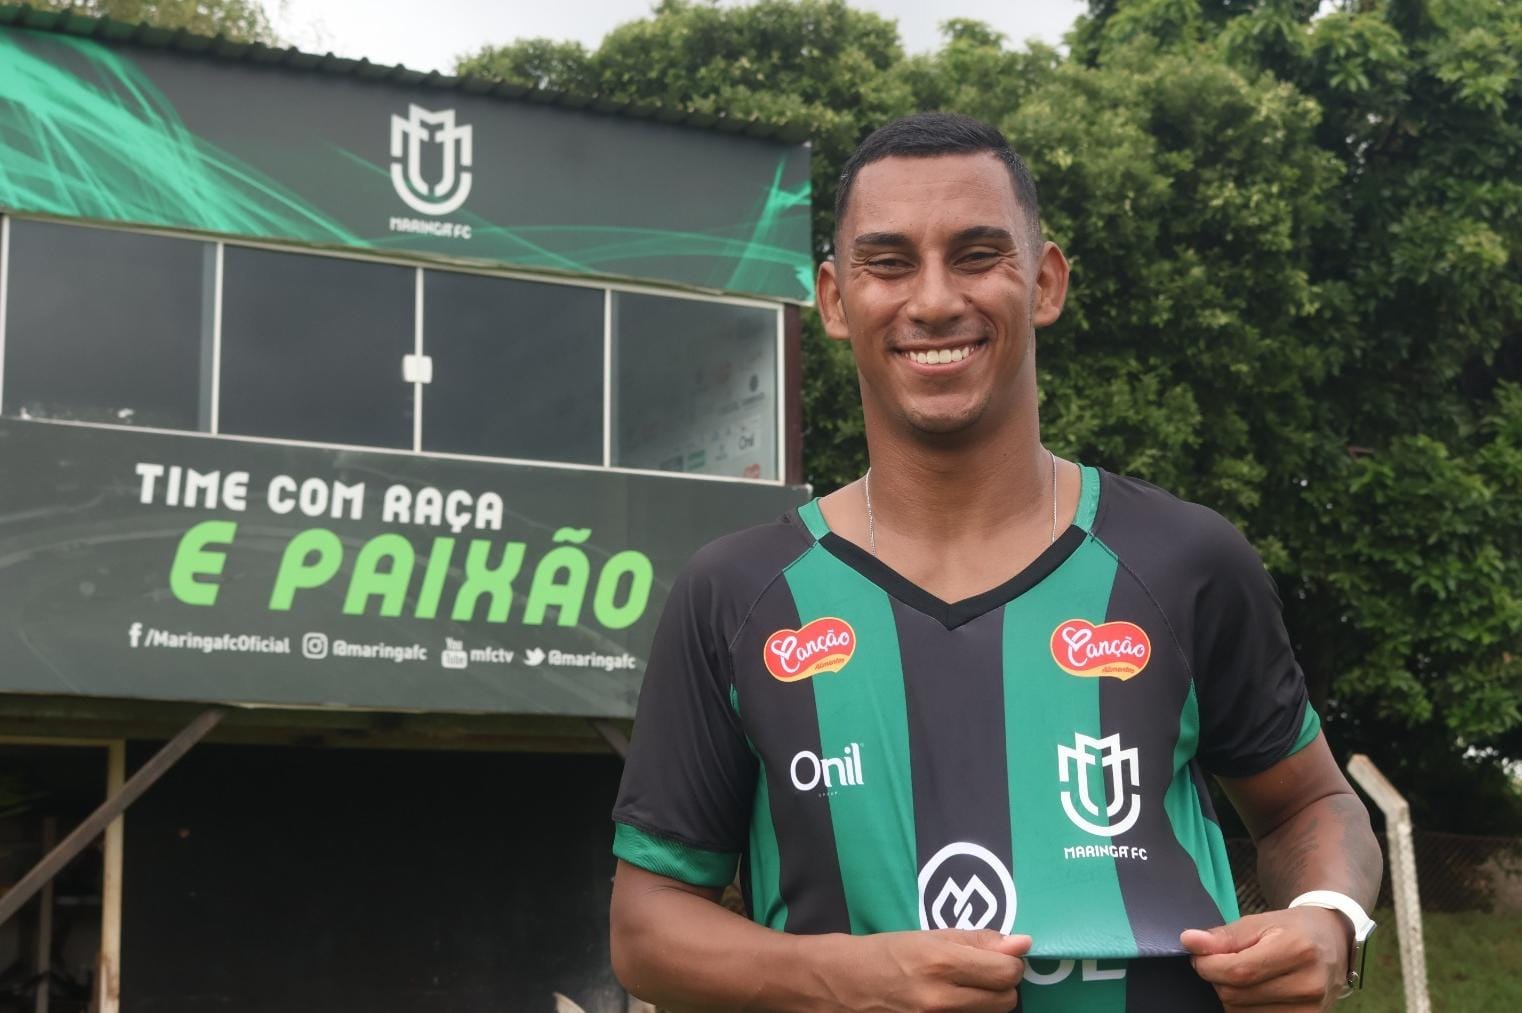 Ex-jogador do Flamengo morre em acidente de moto, em Maringá - GMC Online